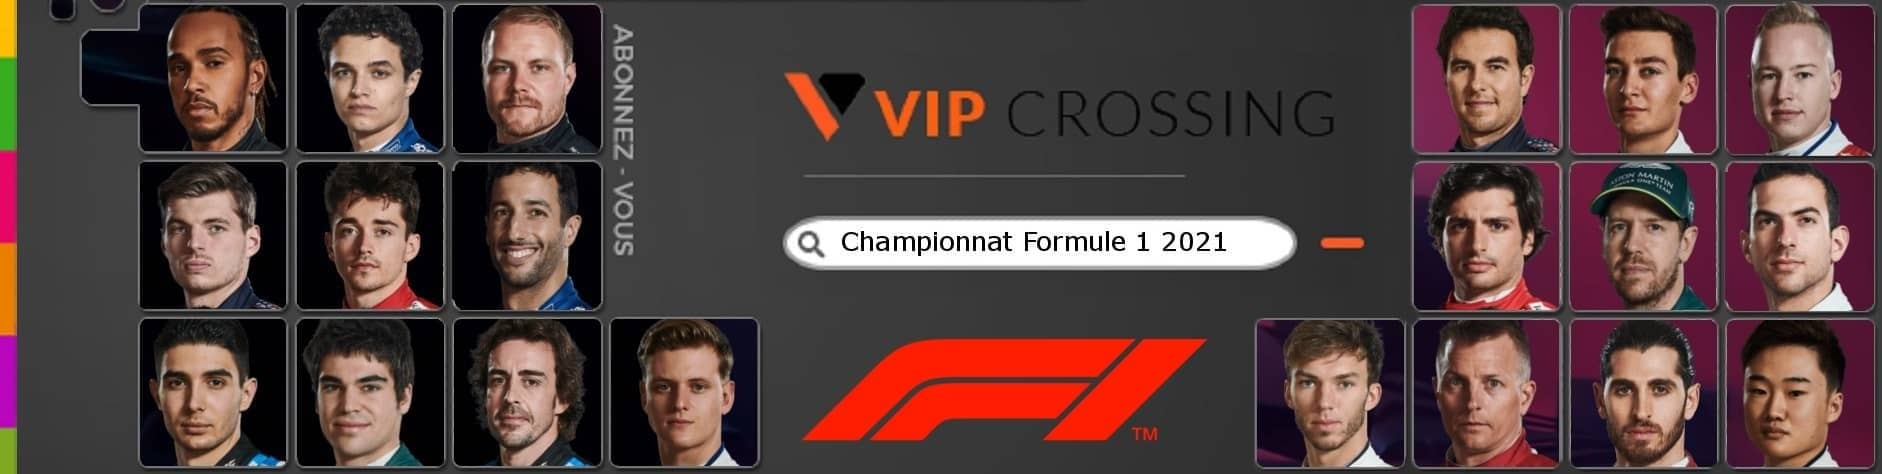 VIP Crossing -  Formule 1